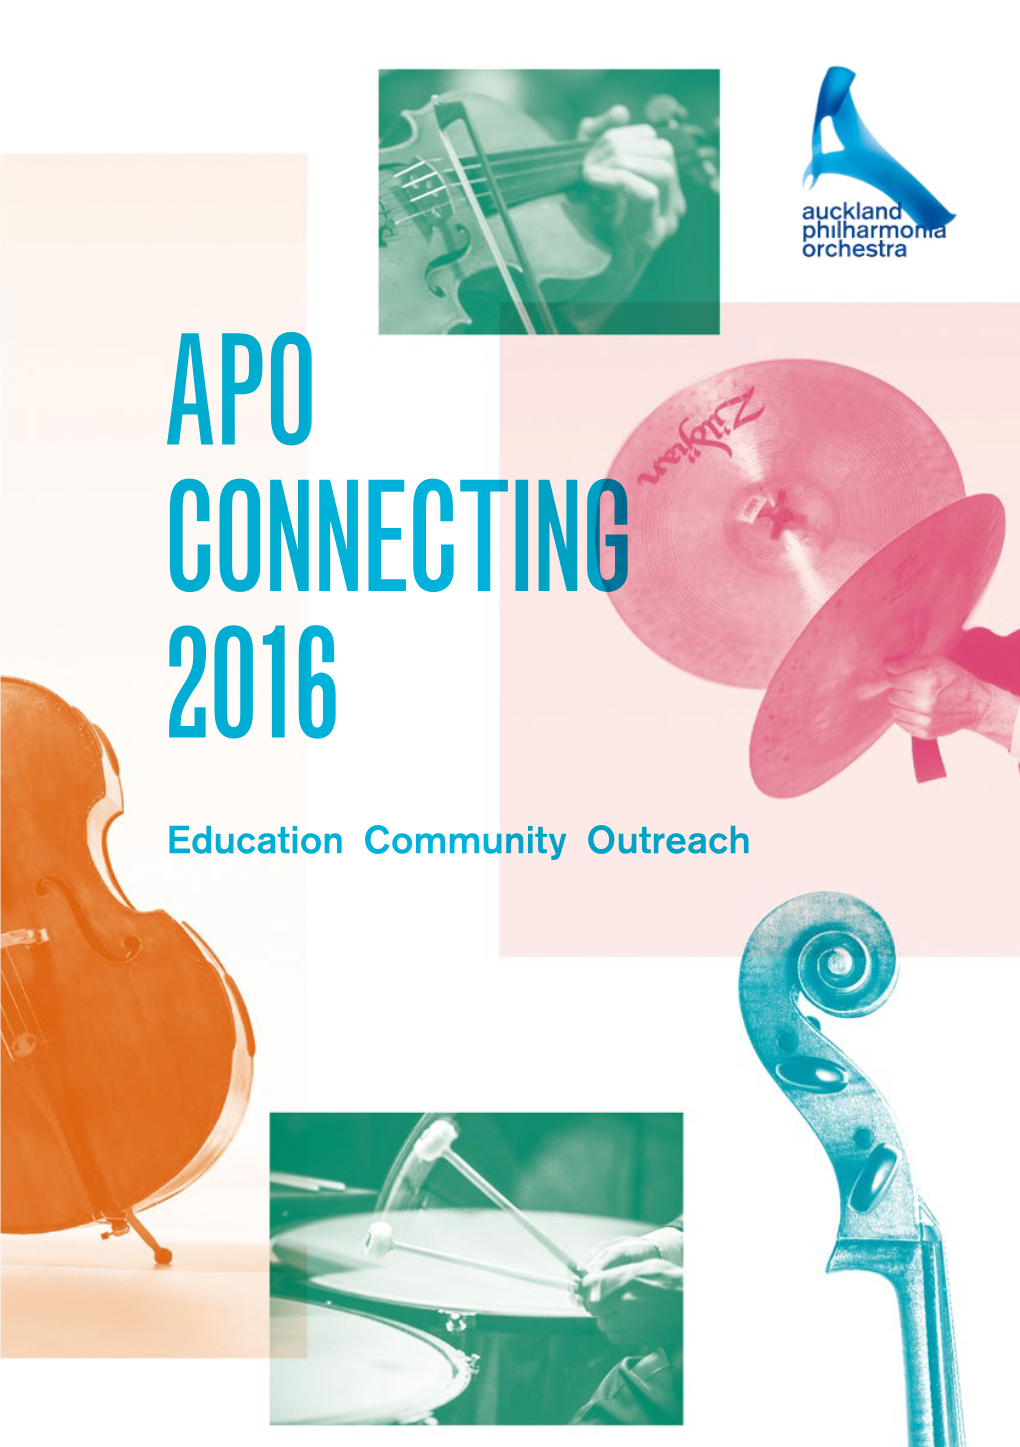 Apo Connecting 2016